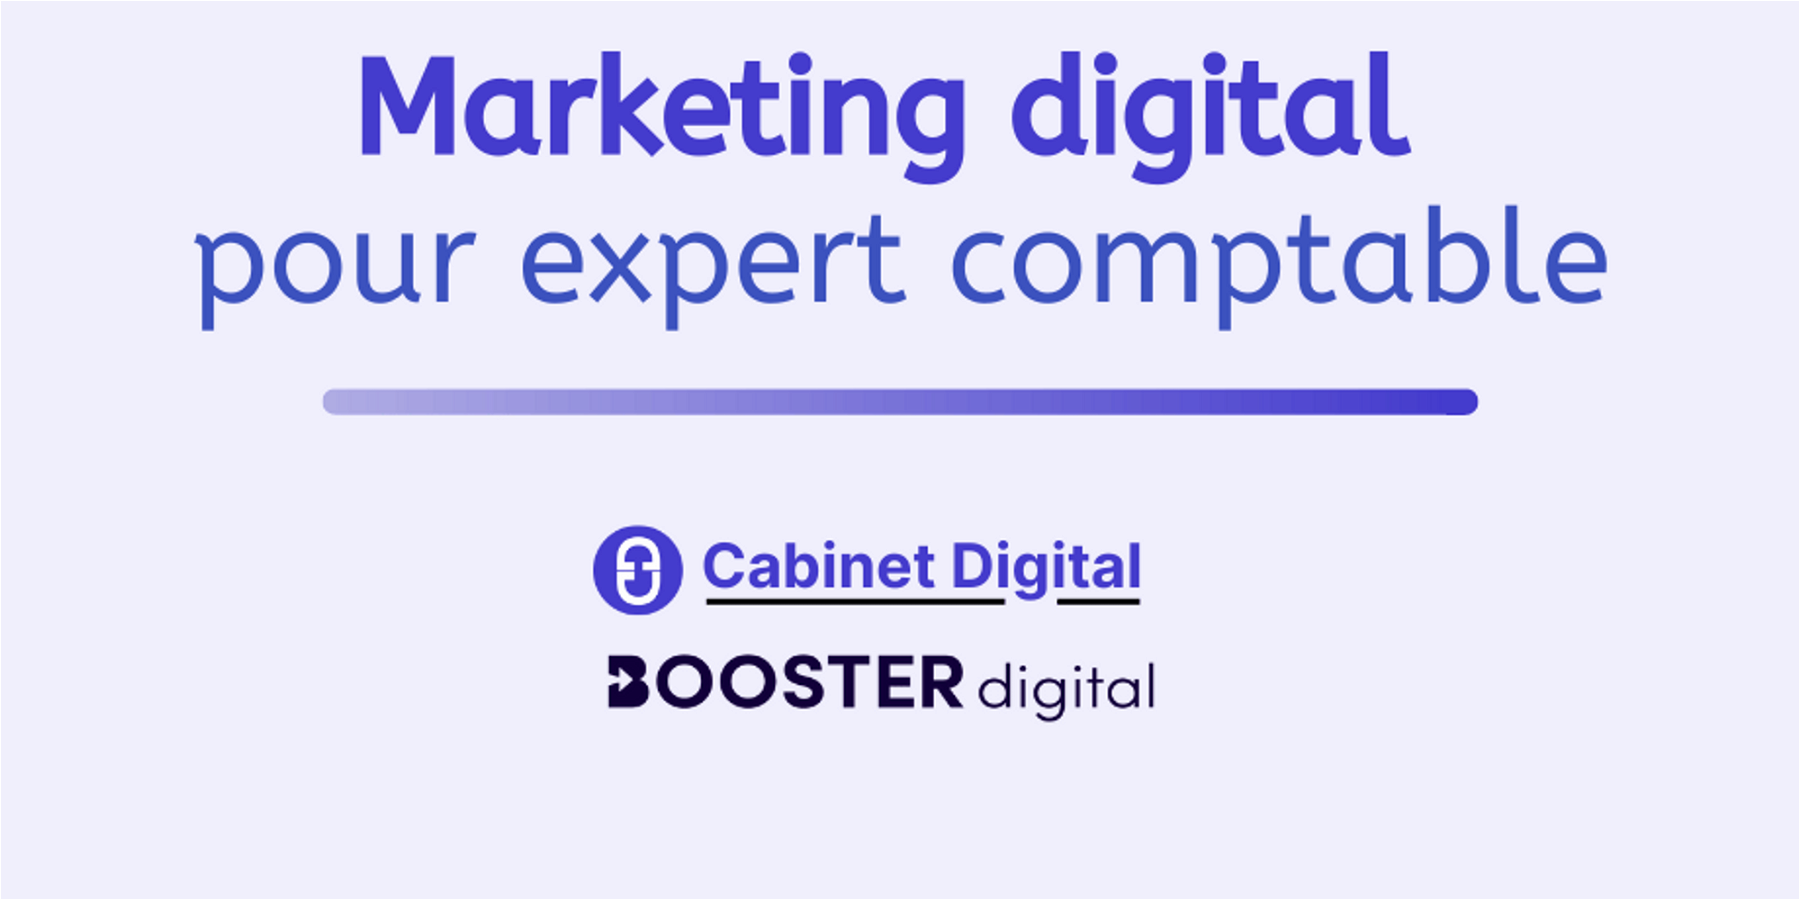 Marketing digital pour un cabinet d'expertise comptable